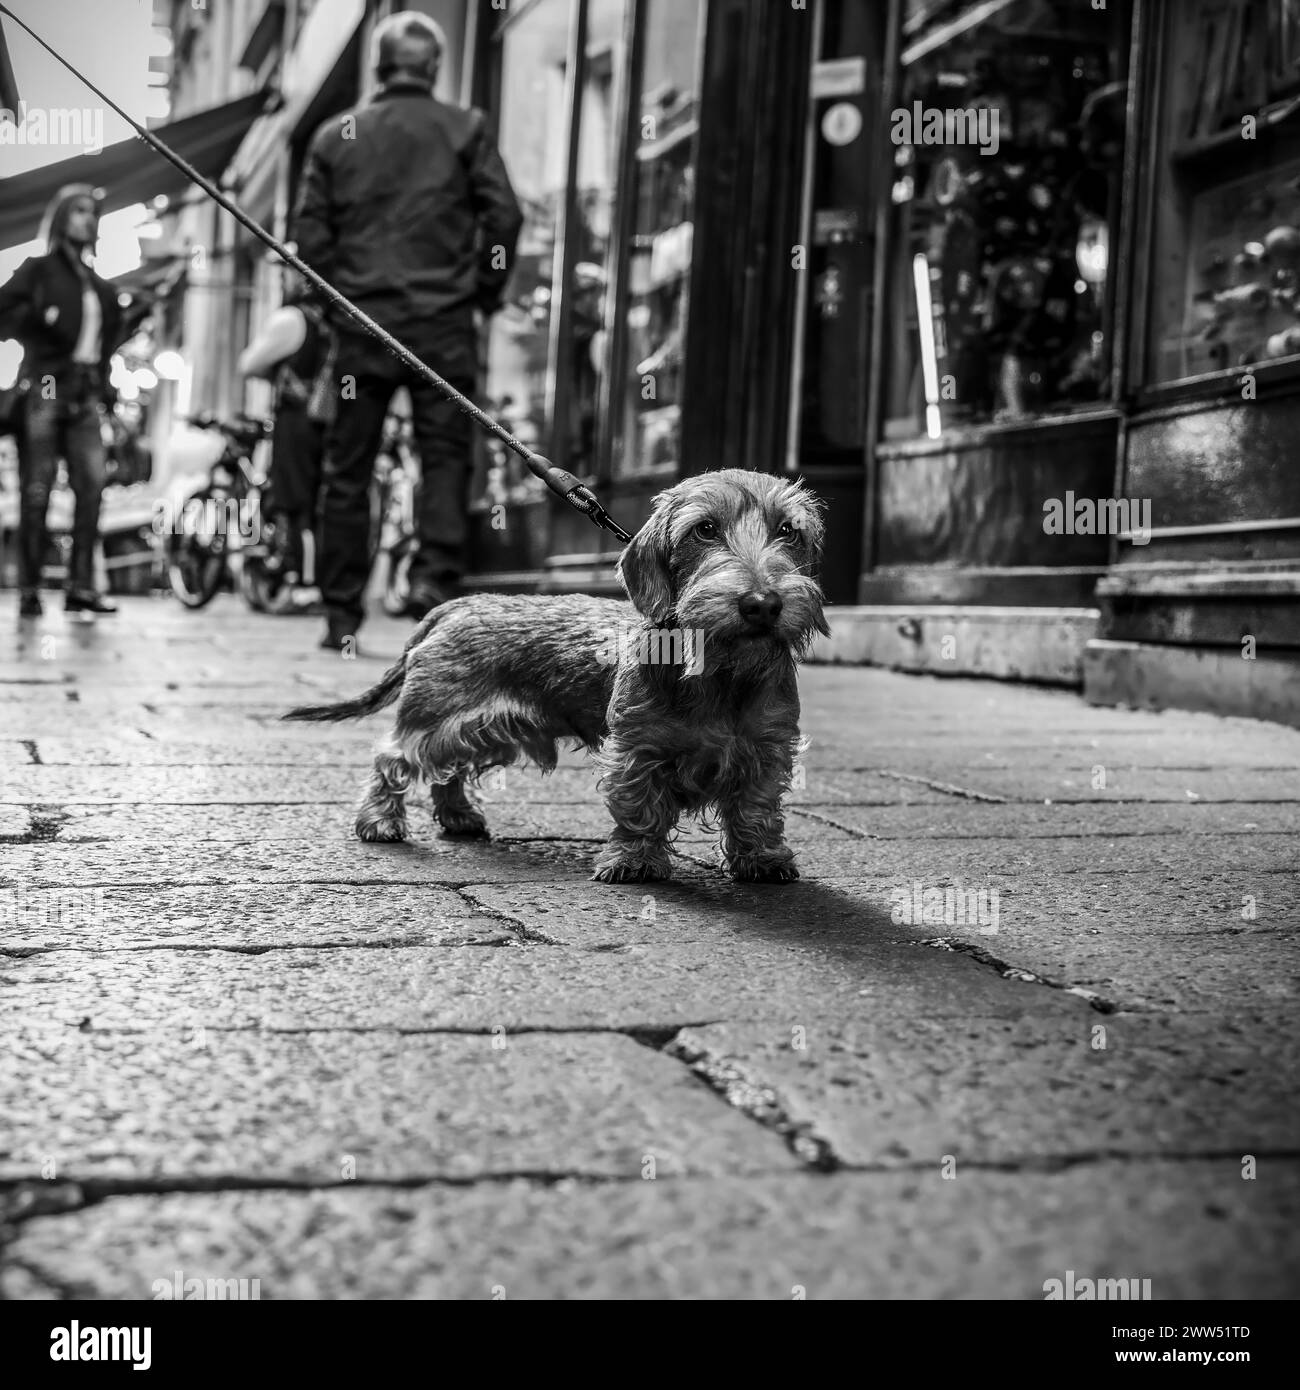 Dackel's Urban Adventure. Ein neugieriger Hund erkundet die belebten Straßen an der Leine. Schwarz- und Weißtöne unterstreichen die Texturen des urbanen Lebens. Stree Stockfoto